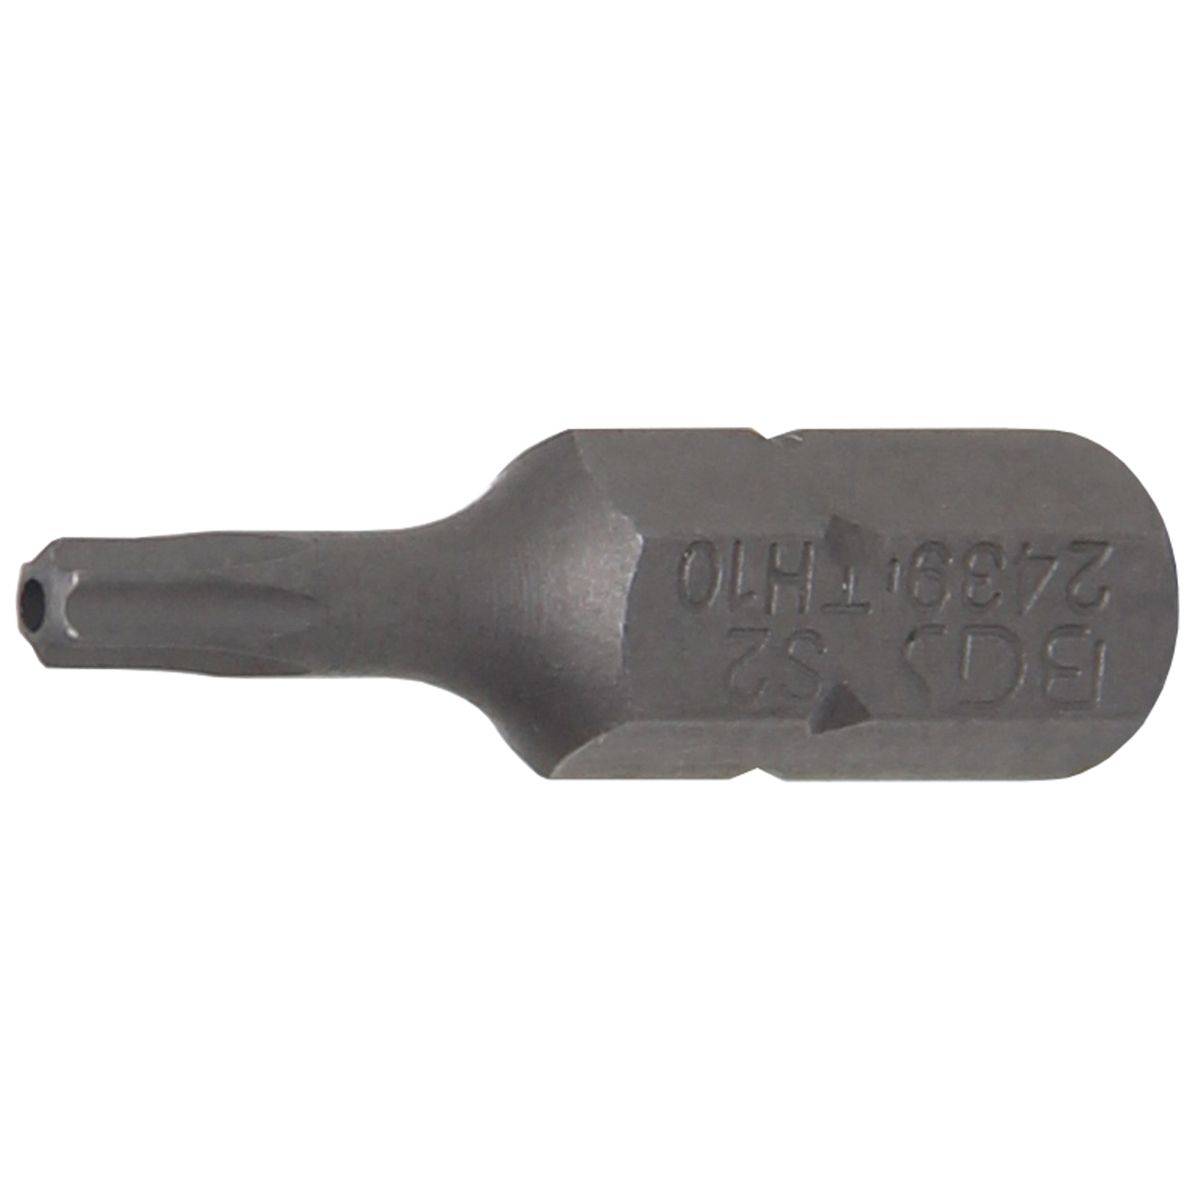 Punta | longitud 25 mm | entrada 6,3 mm (1/4") | perfil en T (para Torx) con perforación T10